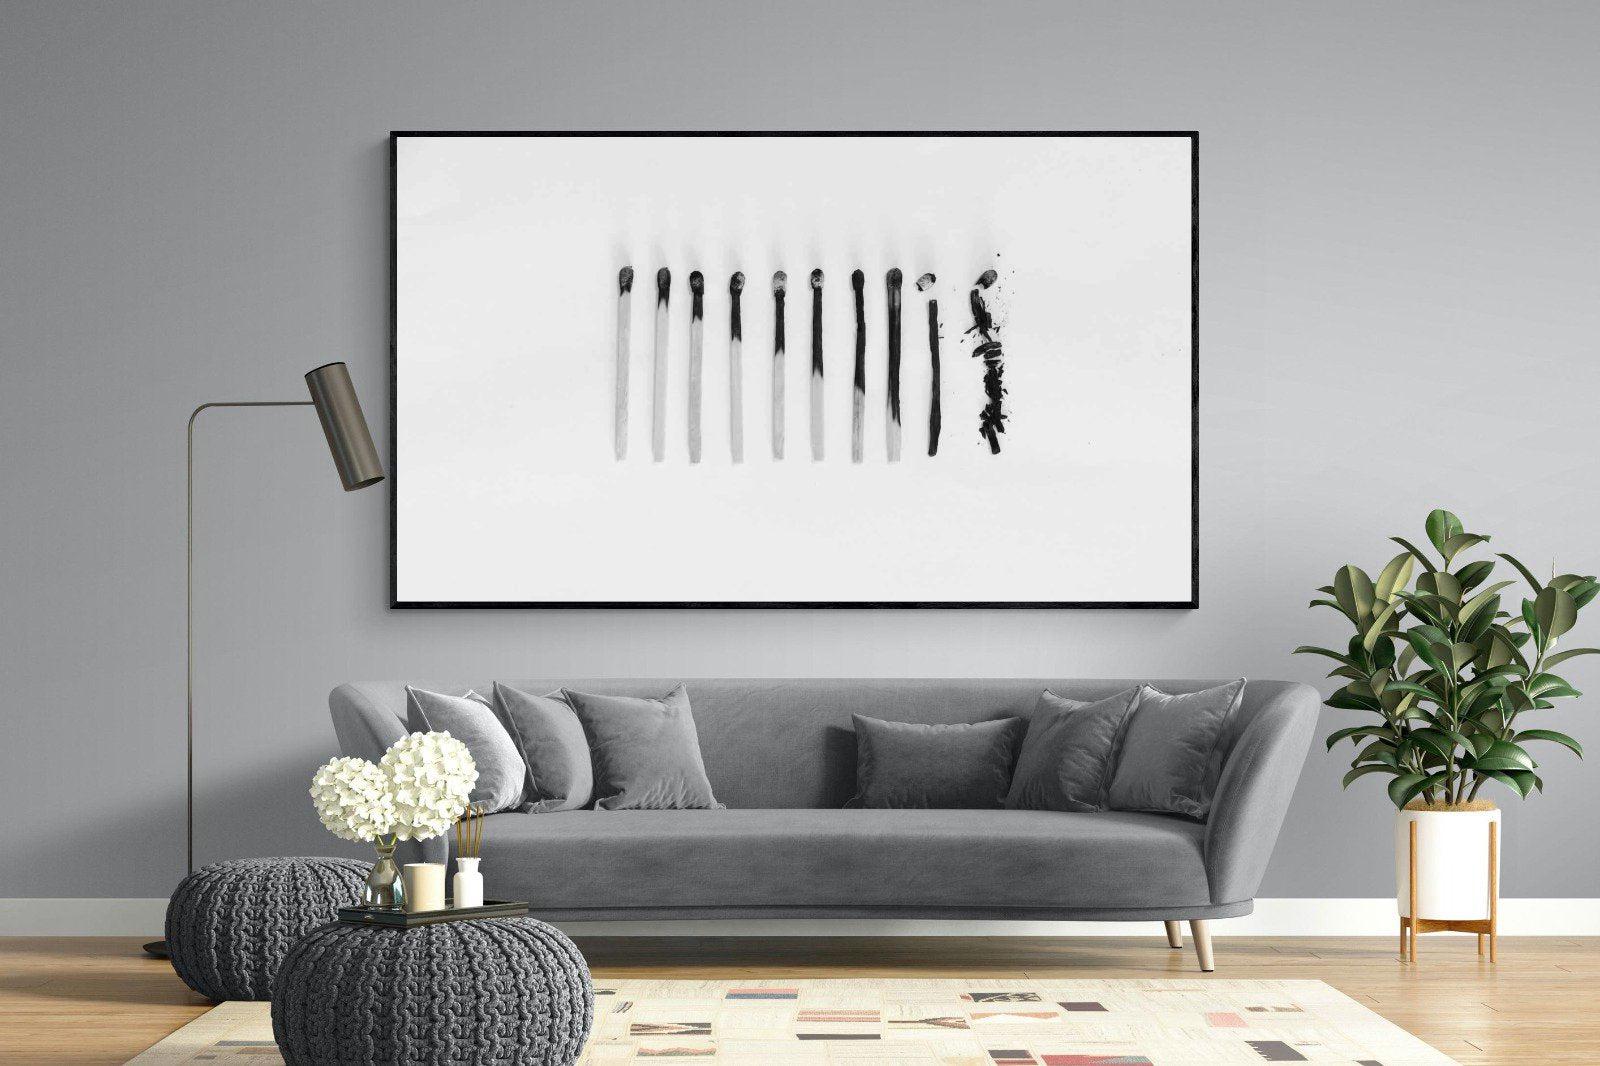 Matchsticks-Wall_Art-220 x 130cm-Mounted Canvas-Black-Pixalot